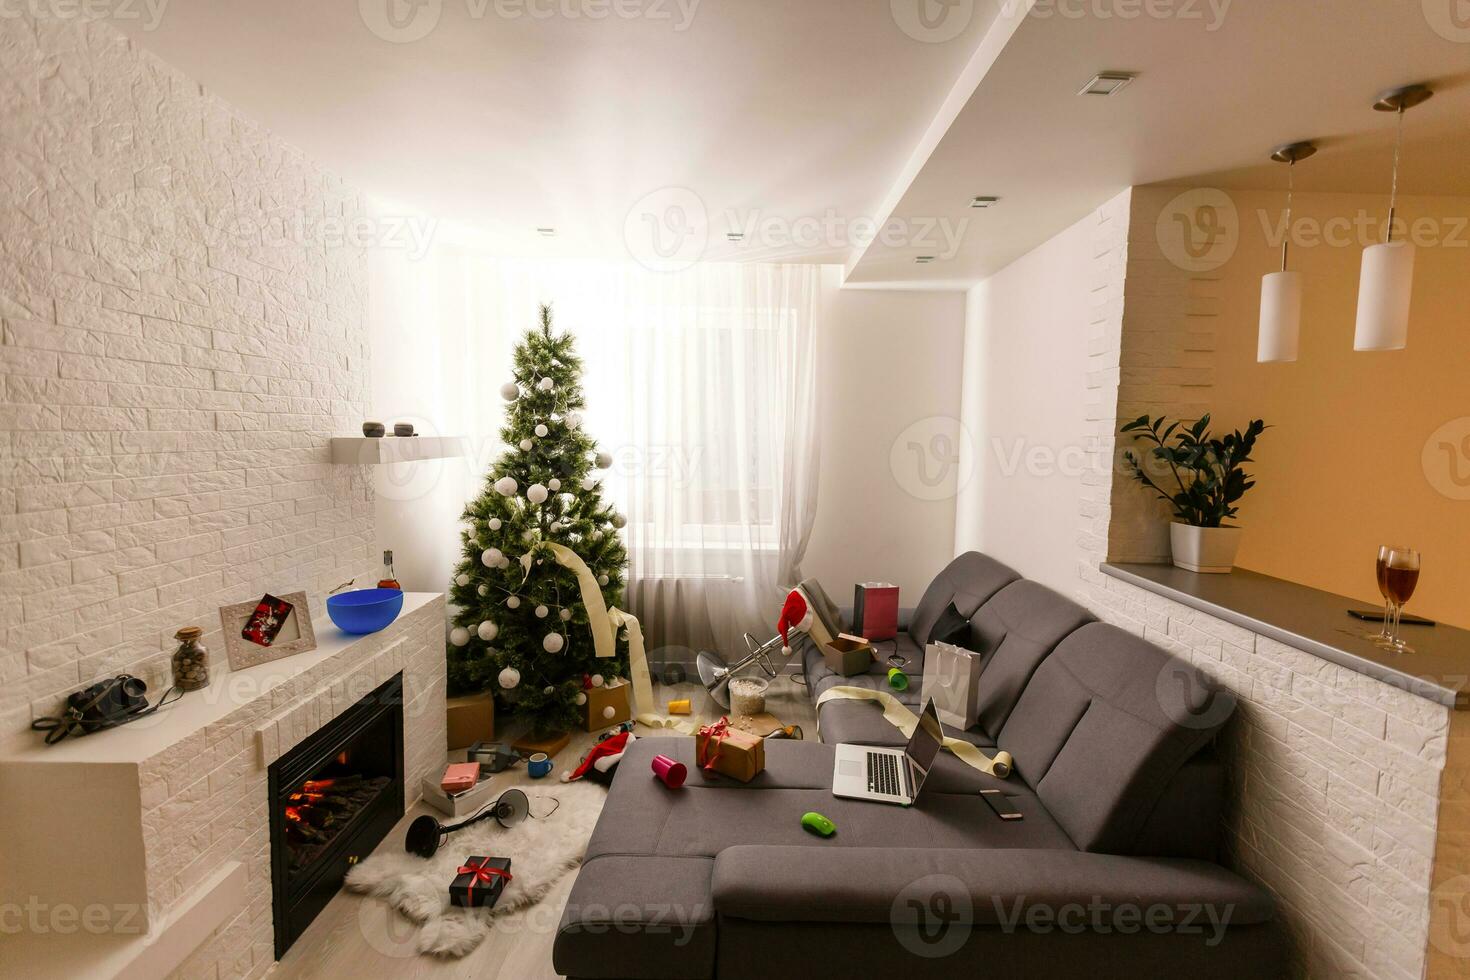 disordinato vivente camera interno con Natale albero. caos dopo festa foto